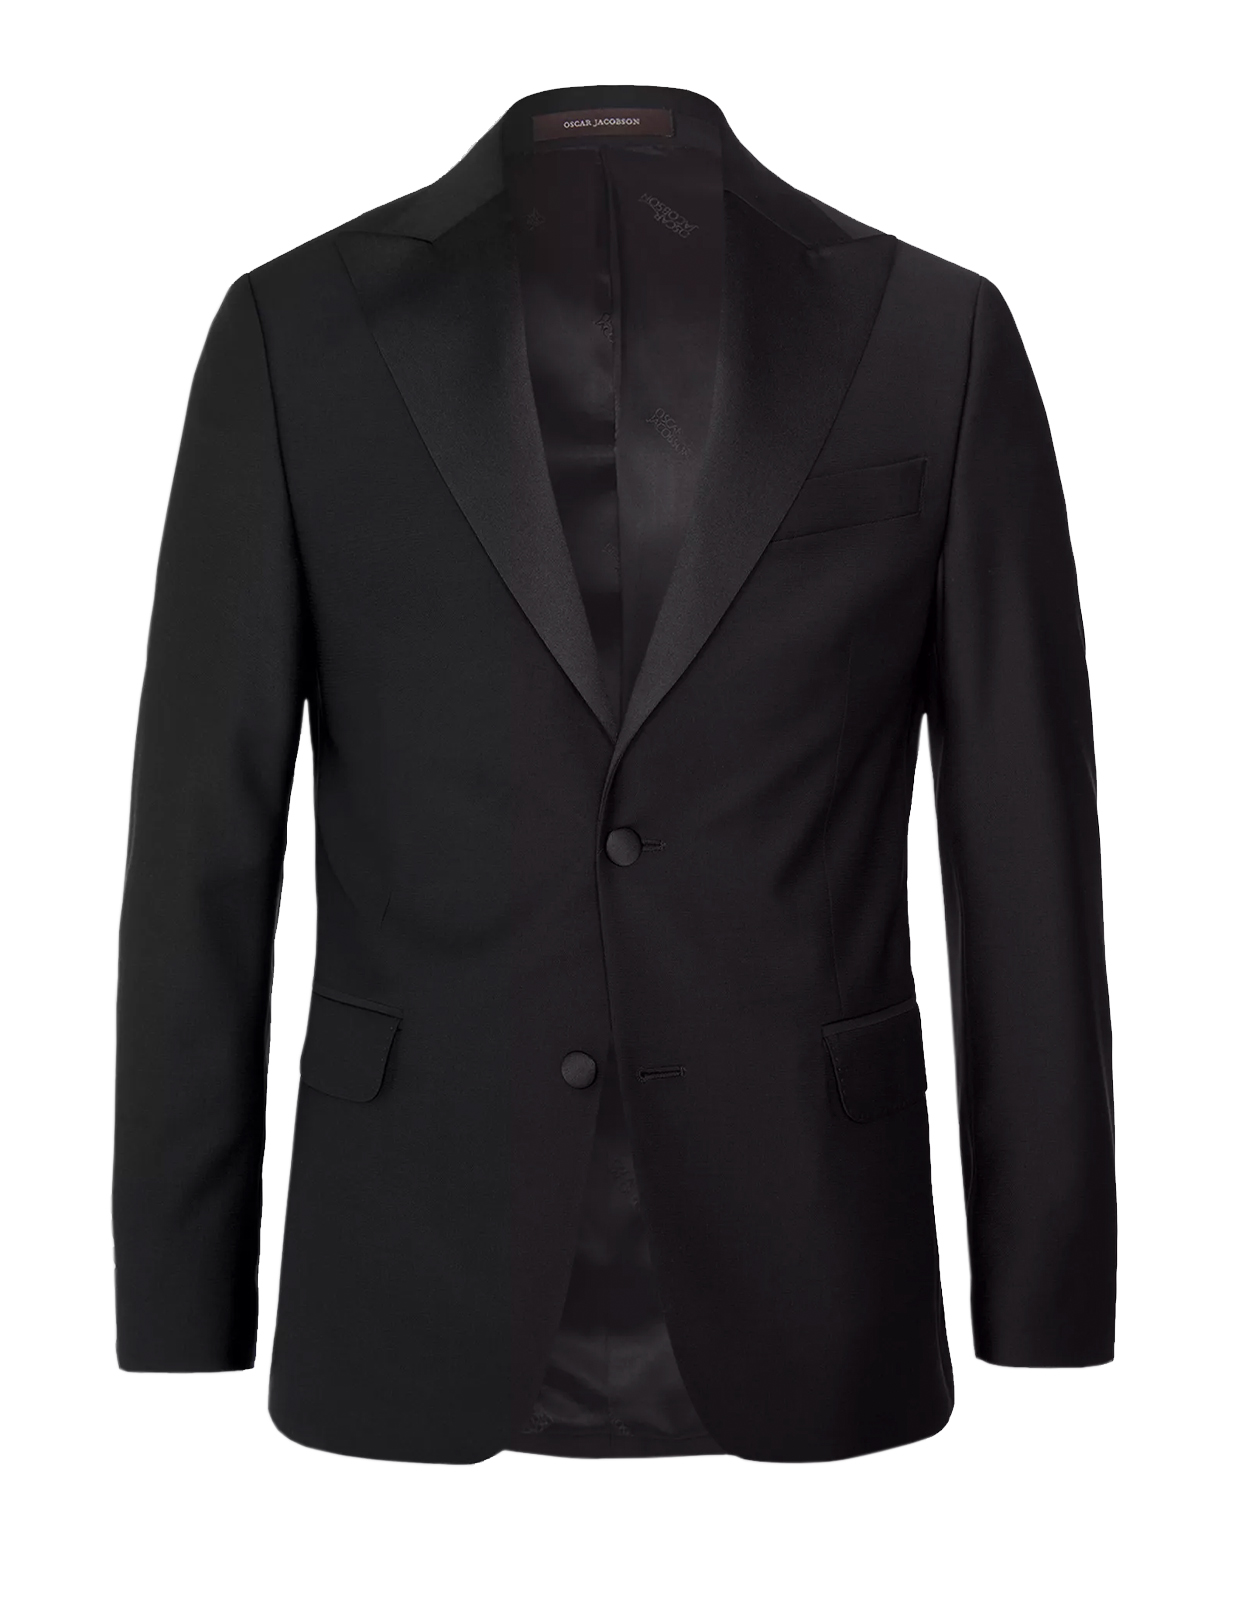 Elder Tuxedo Jacket Mix & Match Black Stl 50